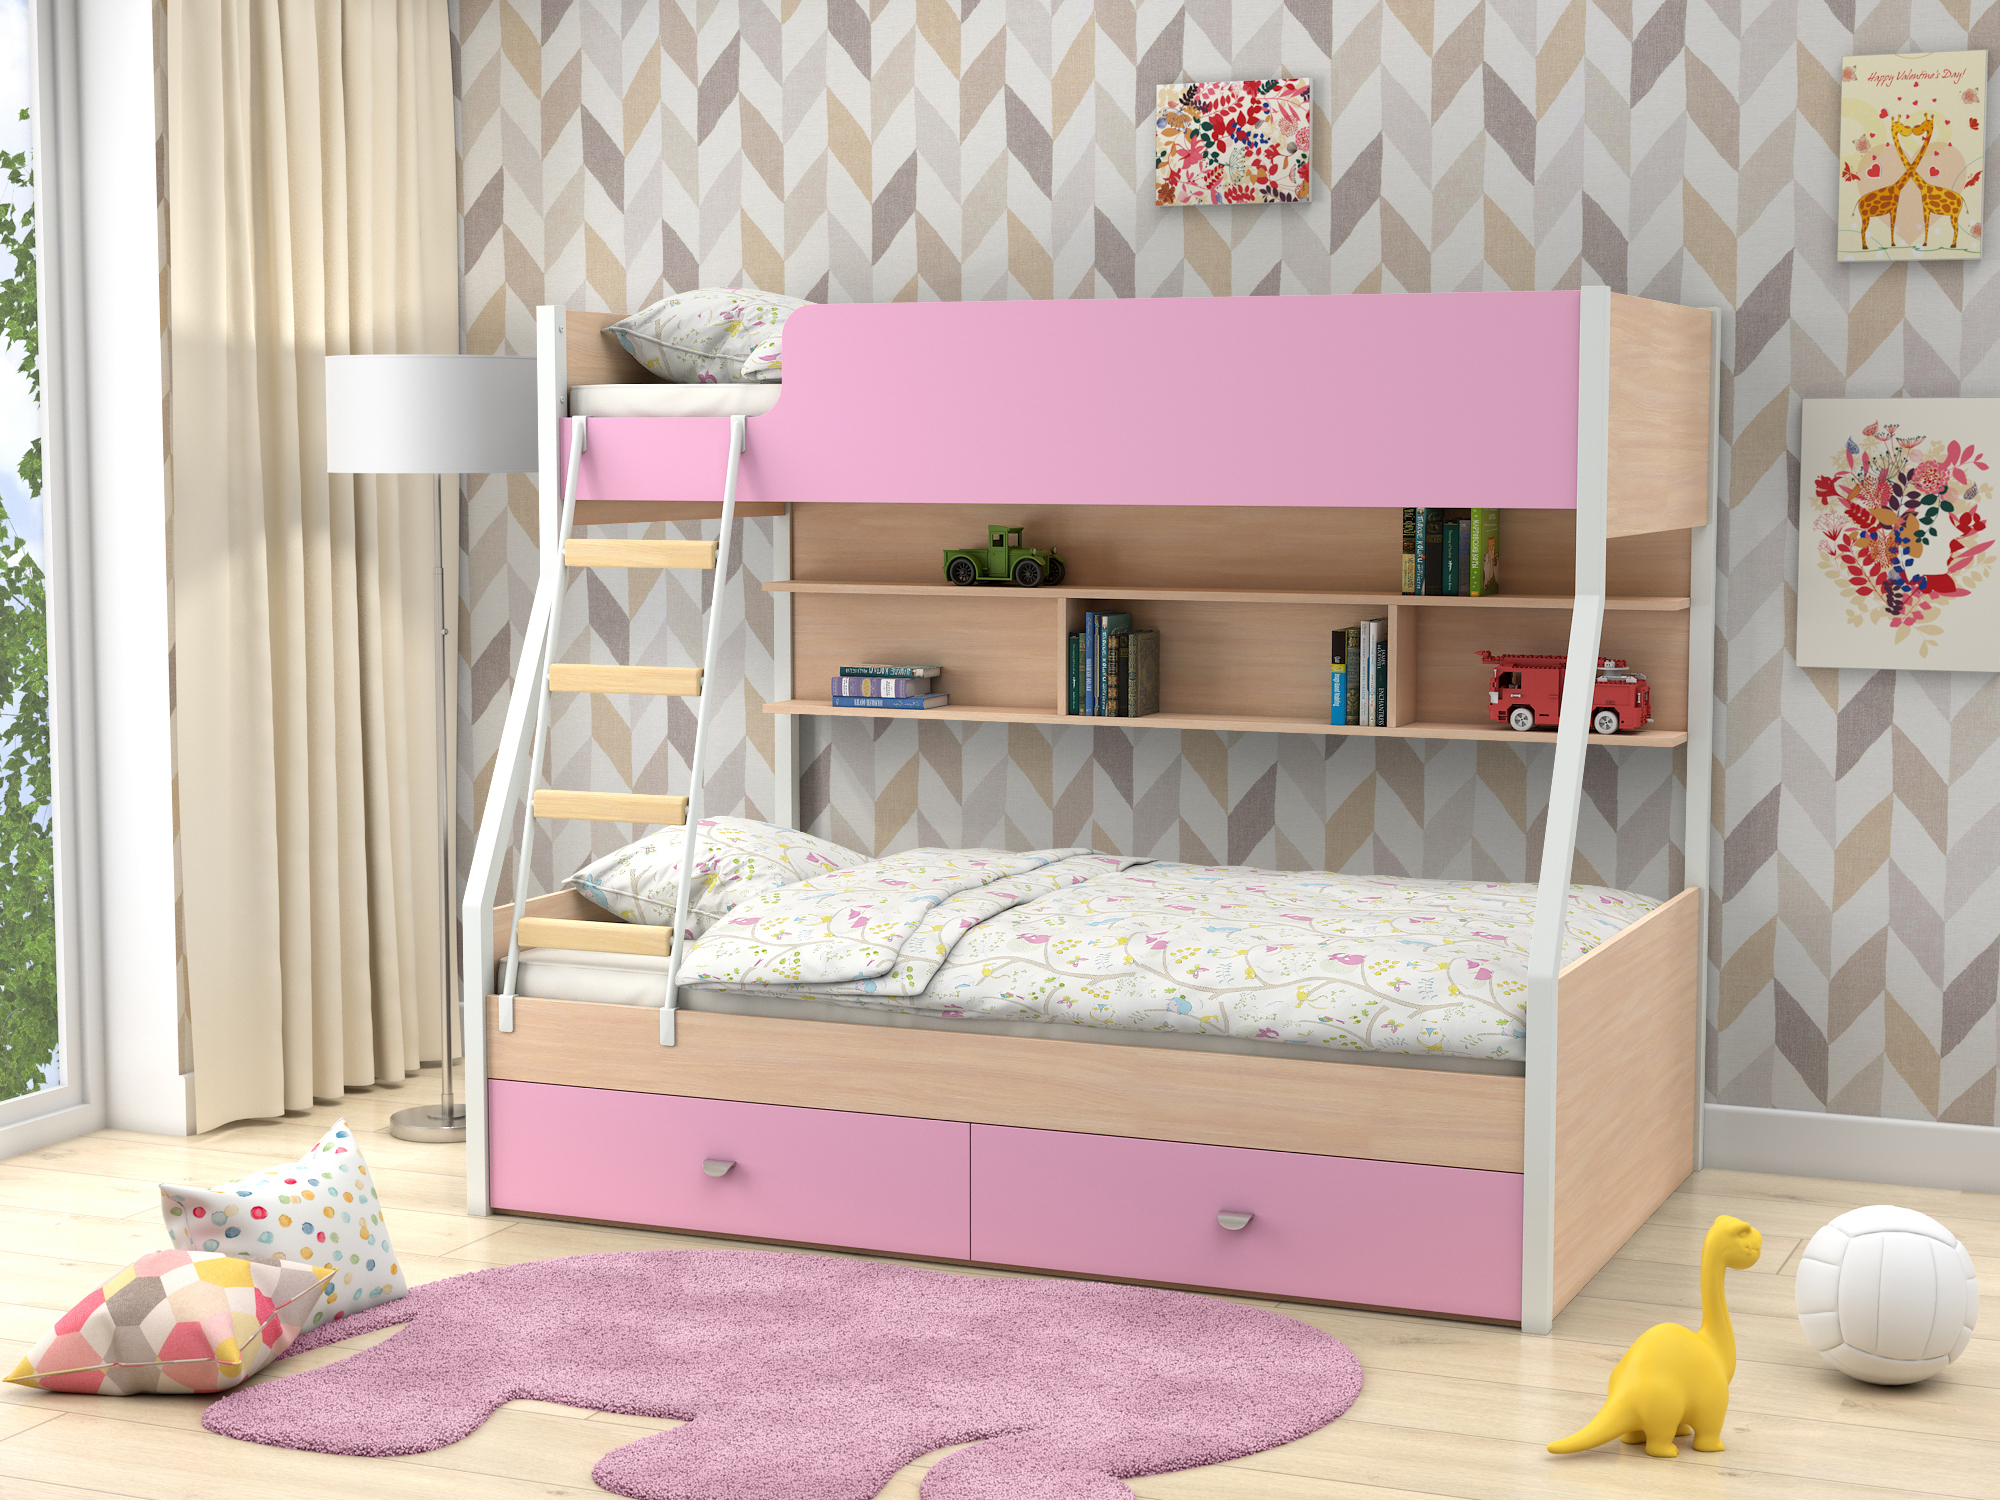 Двухъярусная кровать Golden Kids-3 (90х190/120х190) Розовый, Белый, Бежевый, ЛДСП двухъярусная кровать golden kids 3 90х190 120х190 бежевый белый лдсп